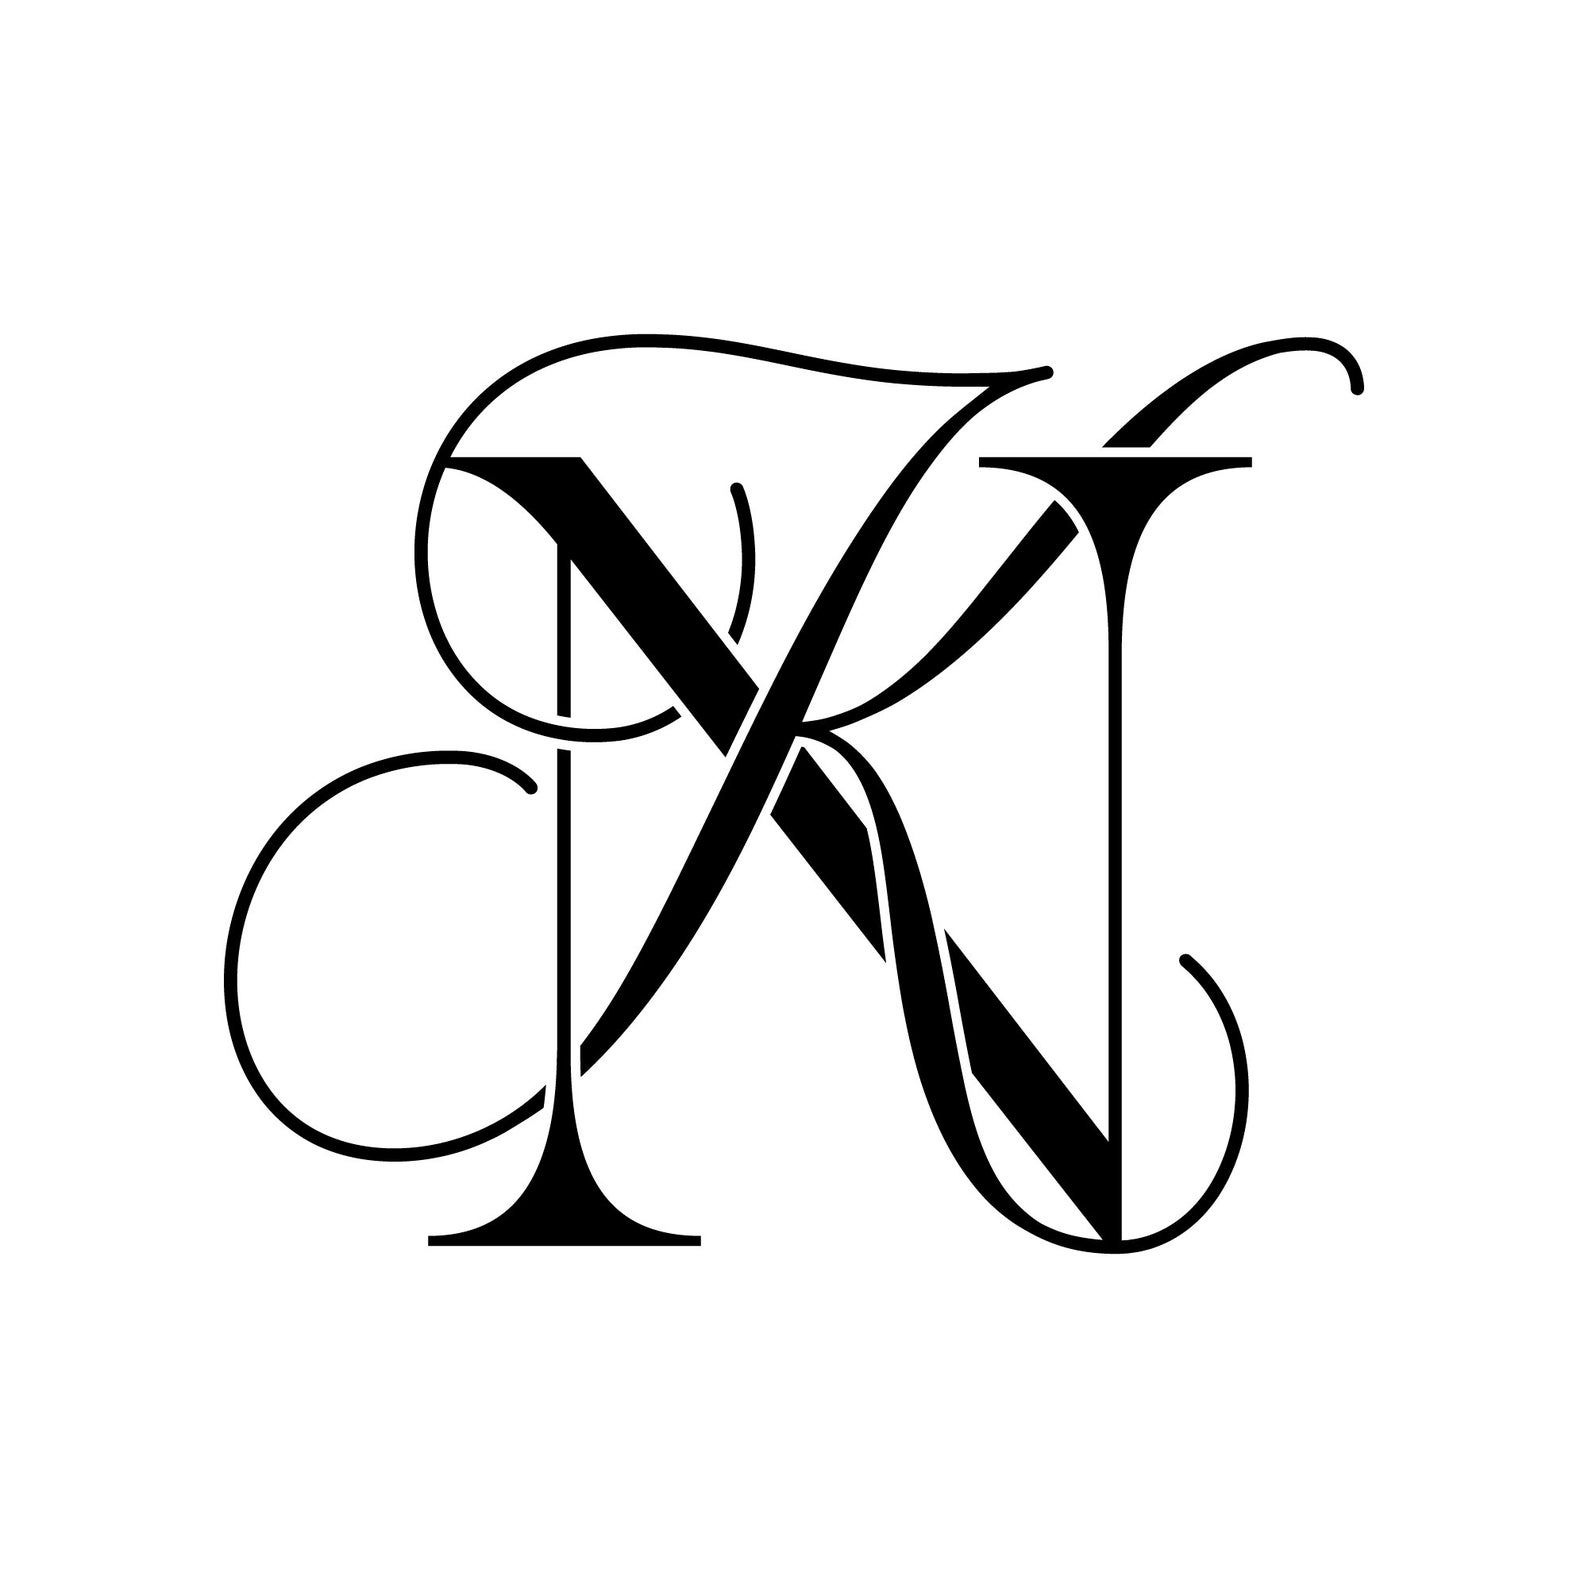 N.k Name - Stylish Name